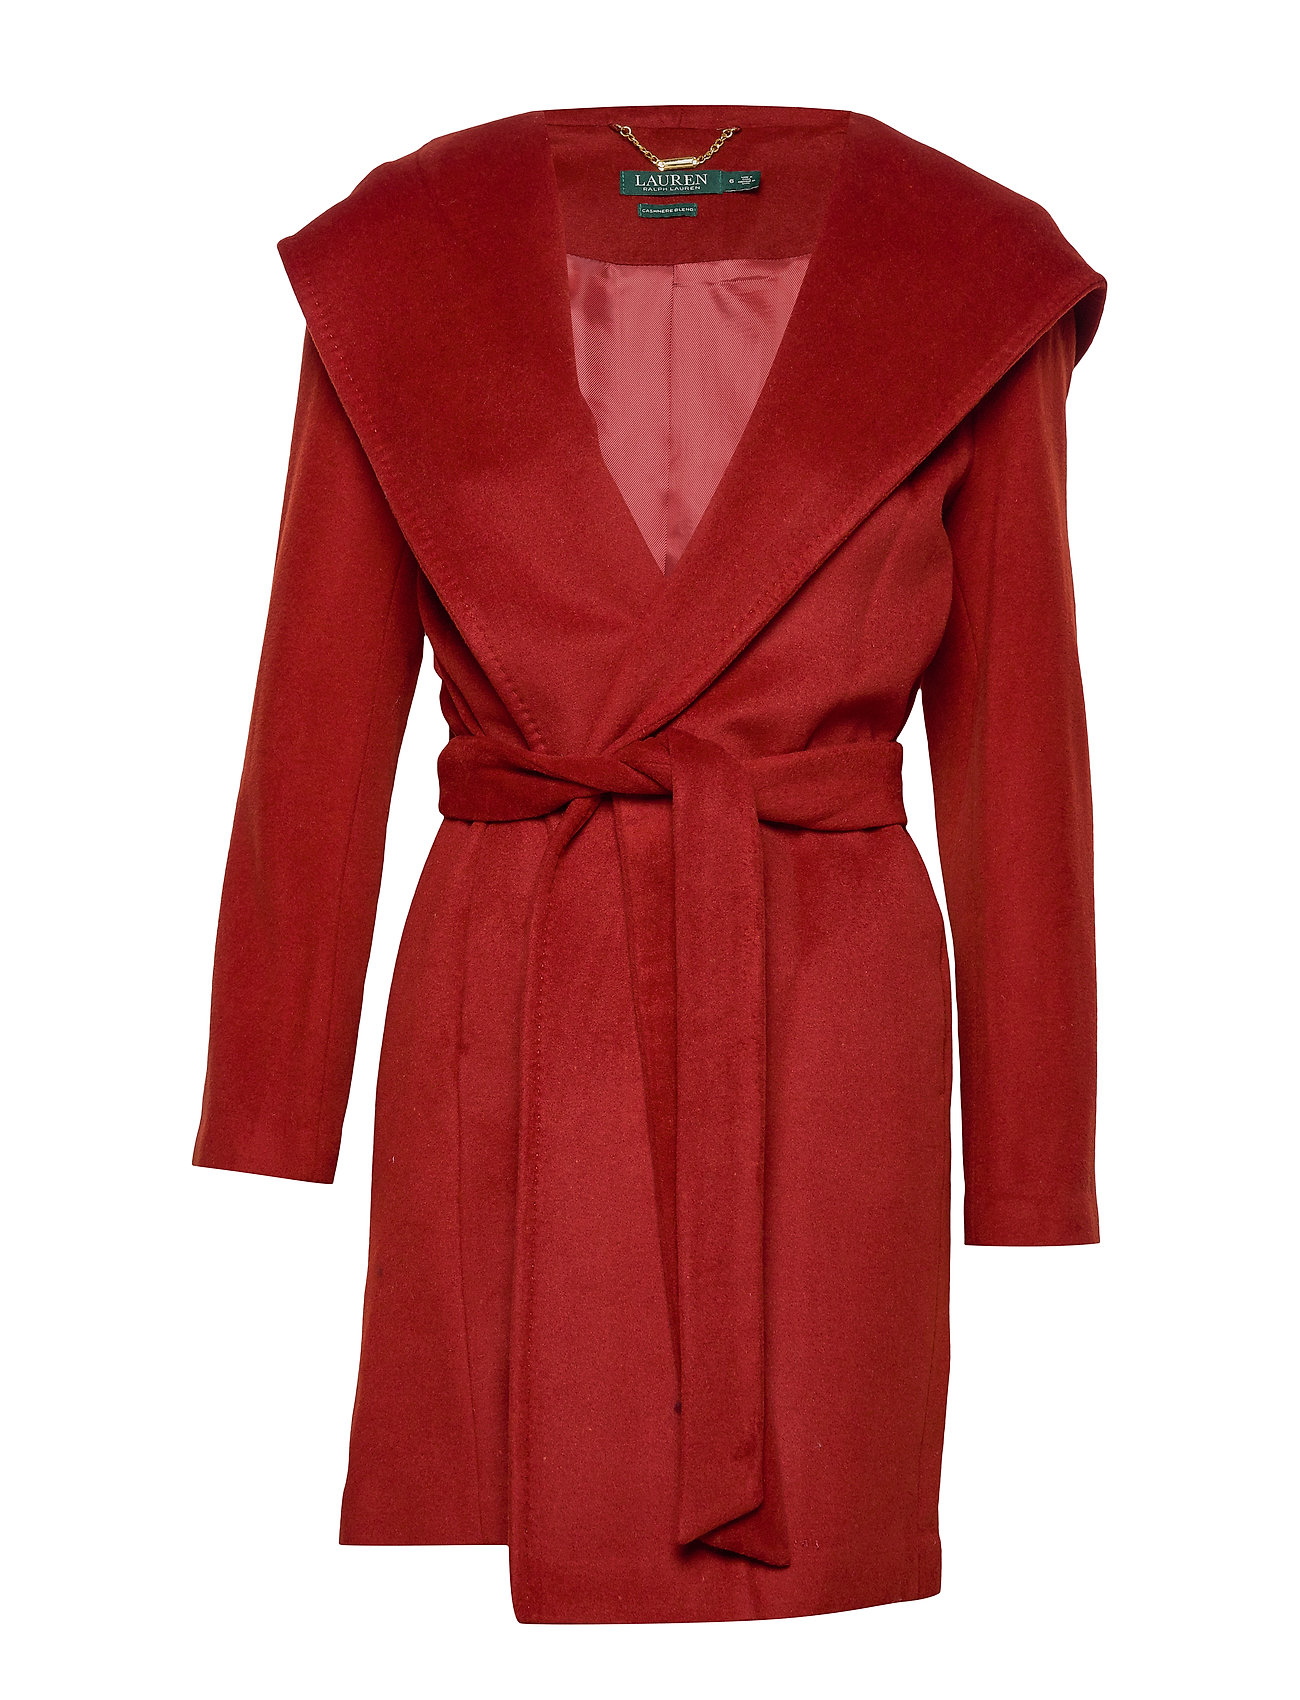 ralph lauren cashmere coat